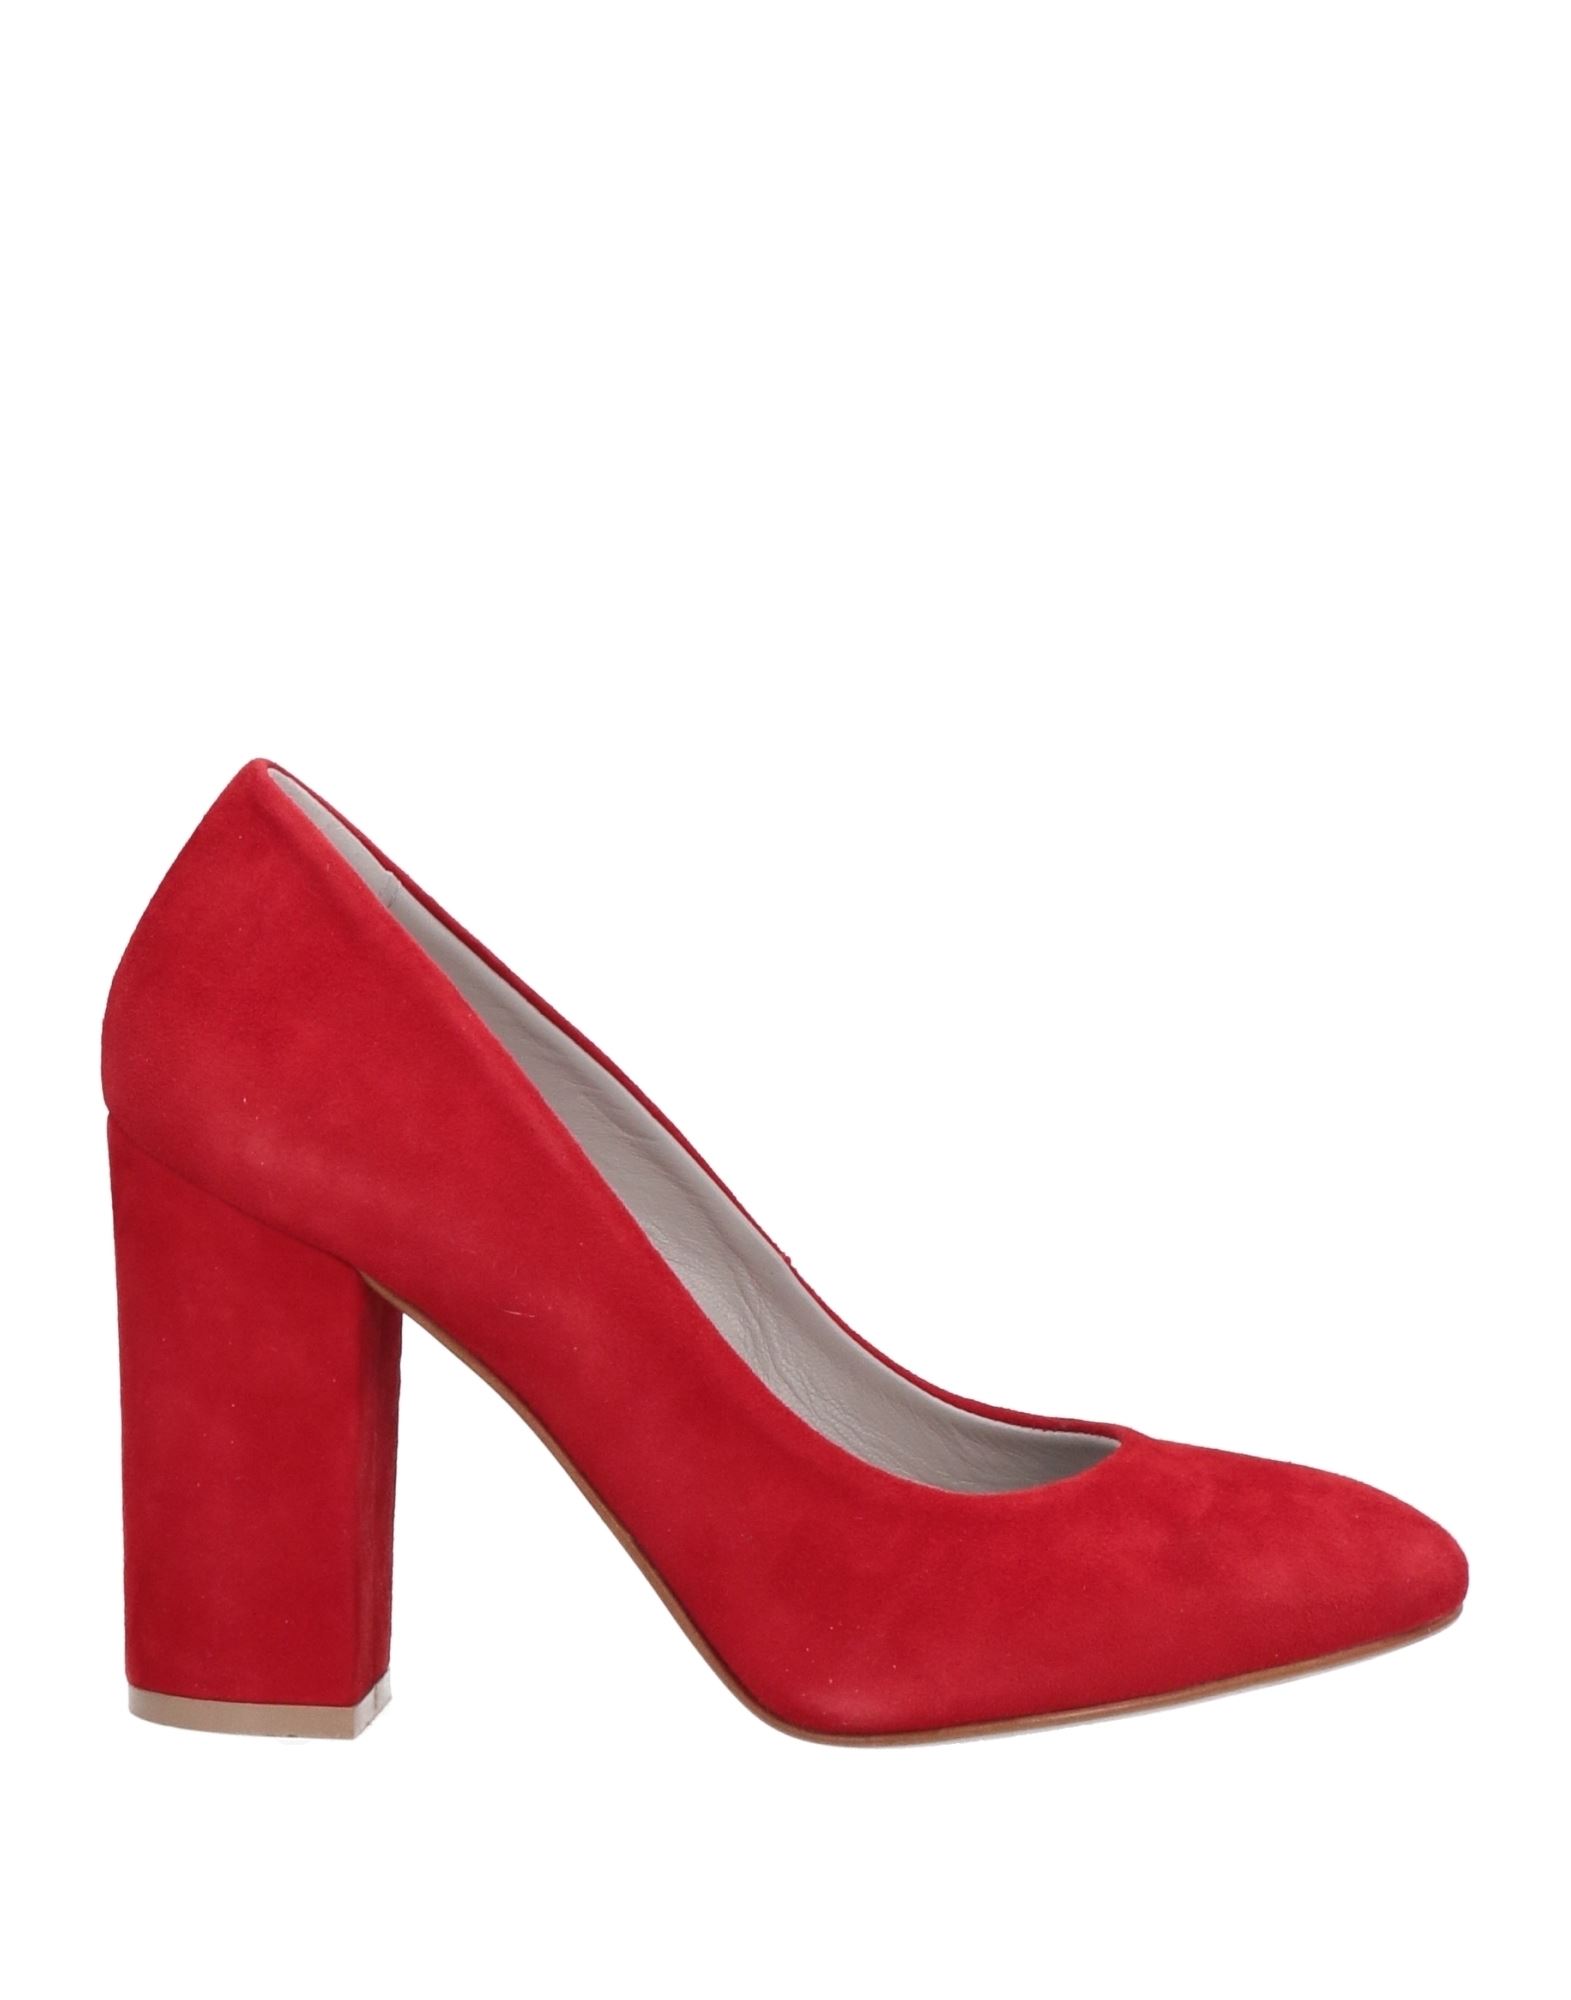 Cafènoir Woman Pumps Red Size 6 Soft Leather